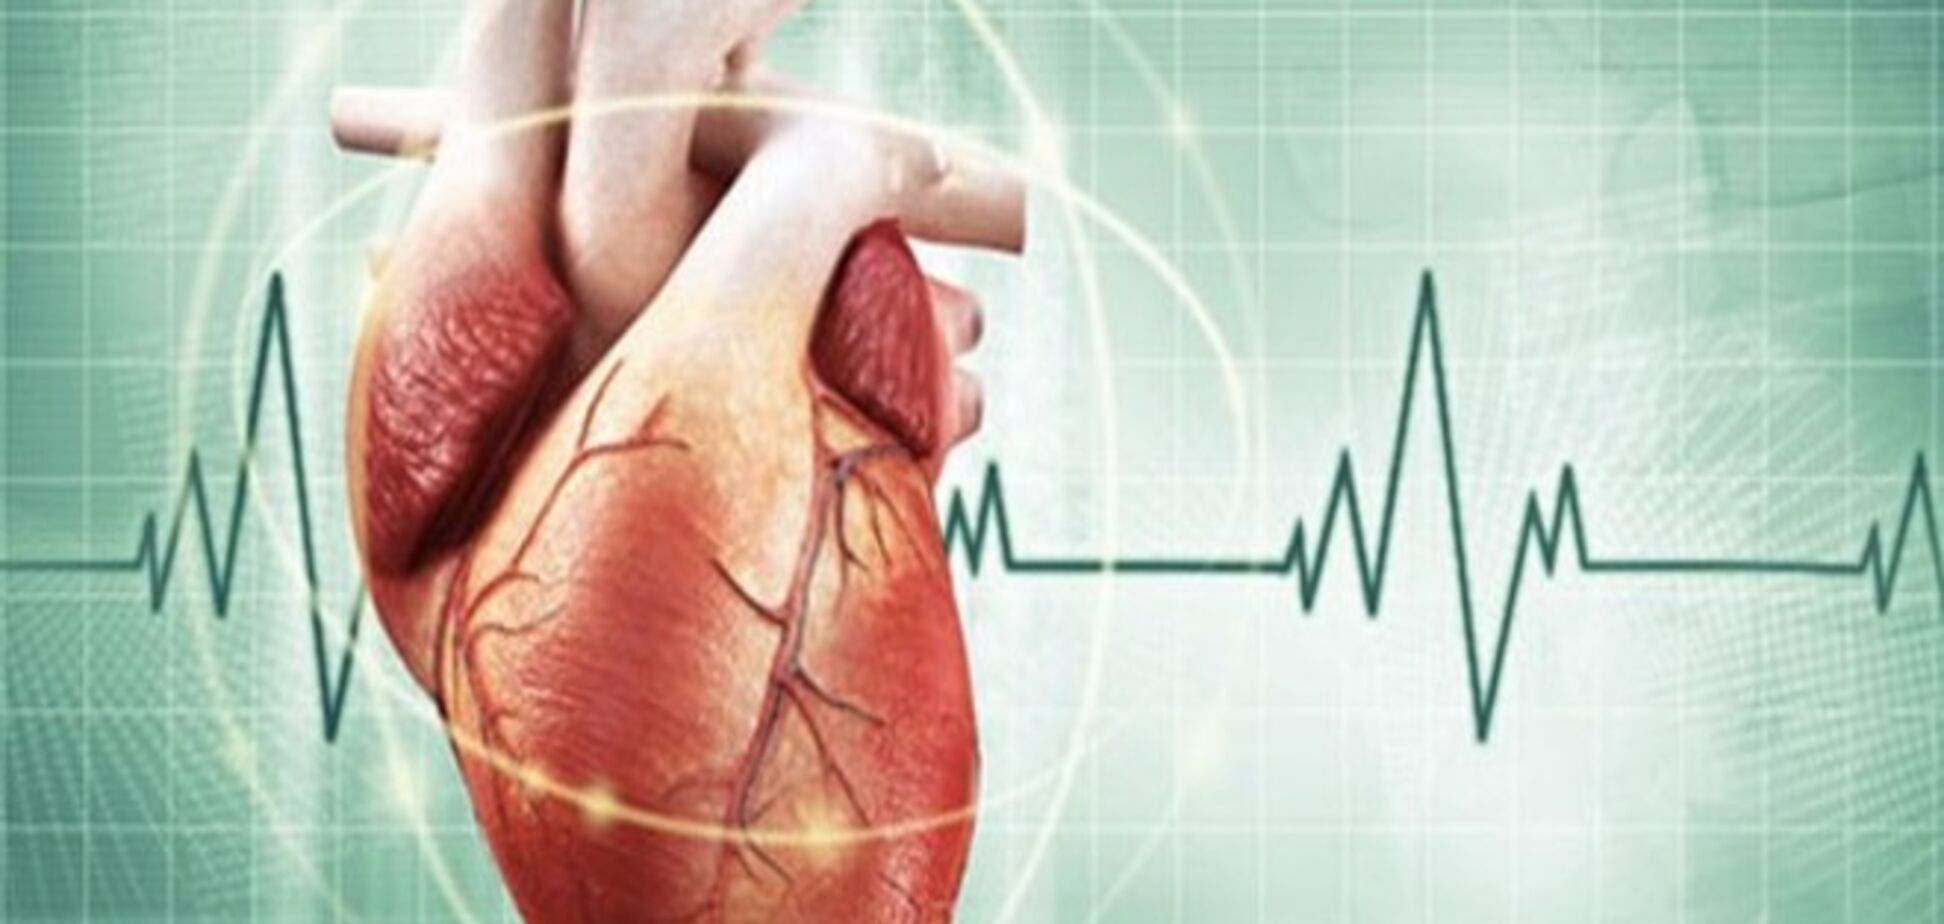 17 удивительных научных фактов о человеческом сердце